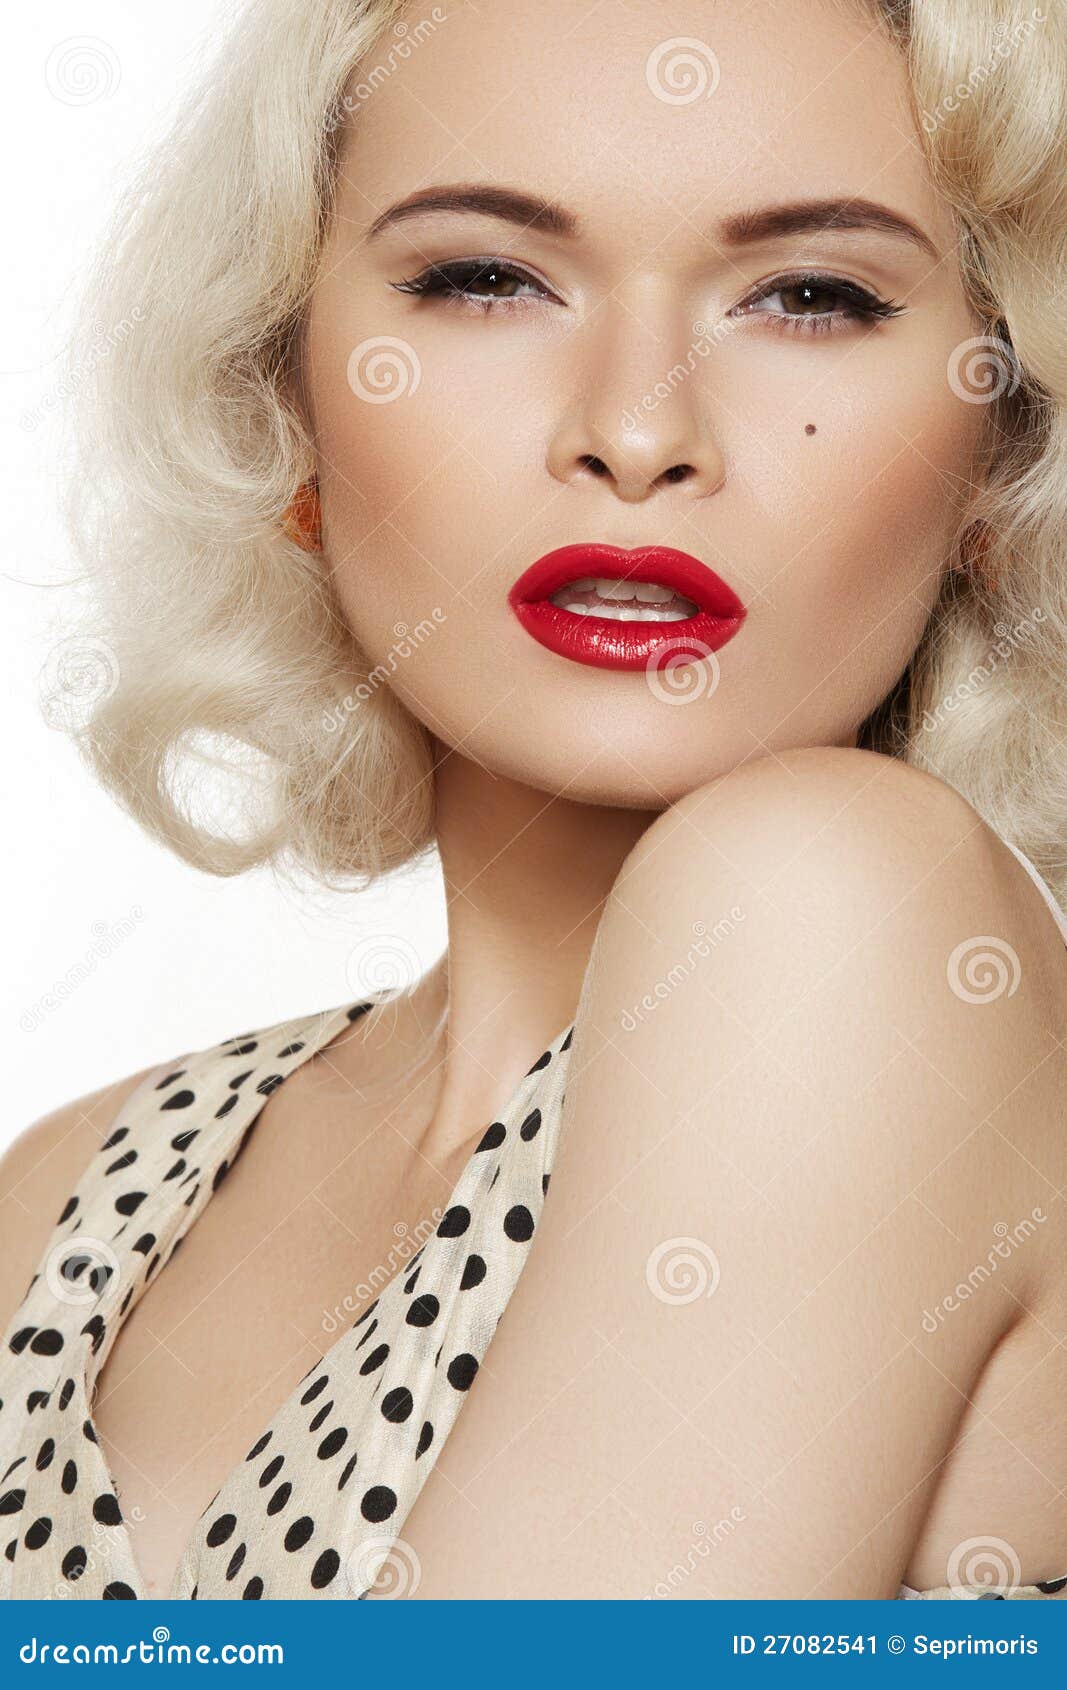 Retro 50s Fashion Pin Up Model Lips Make Up Stock Image Image Of Elegant Care 27082541